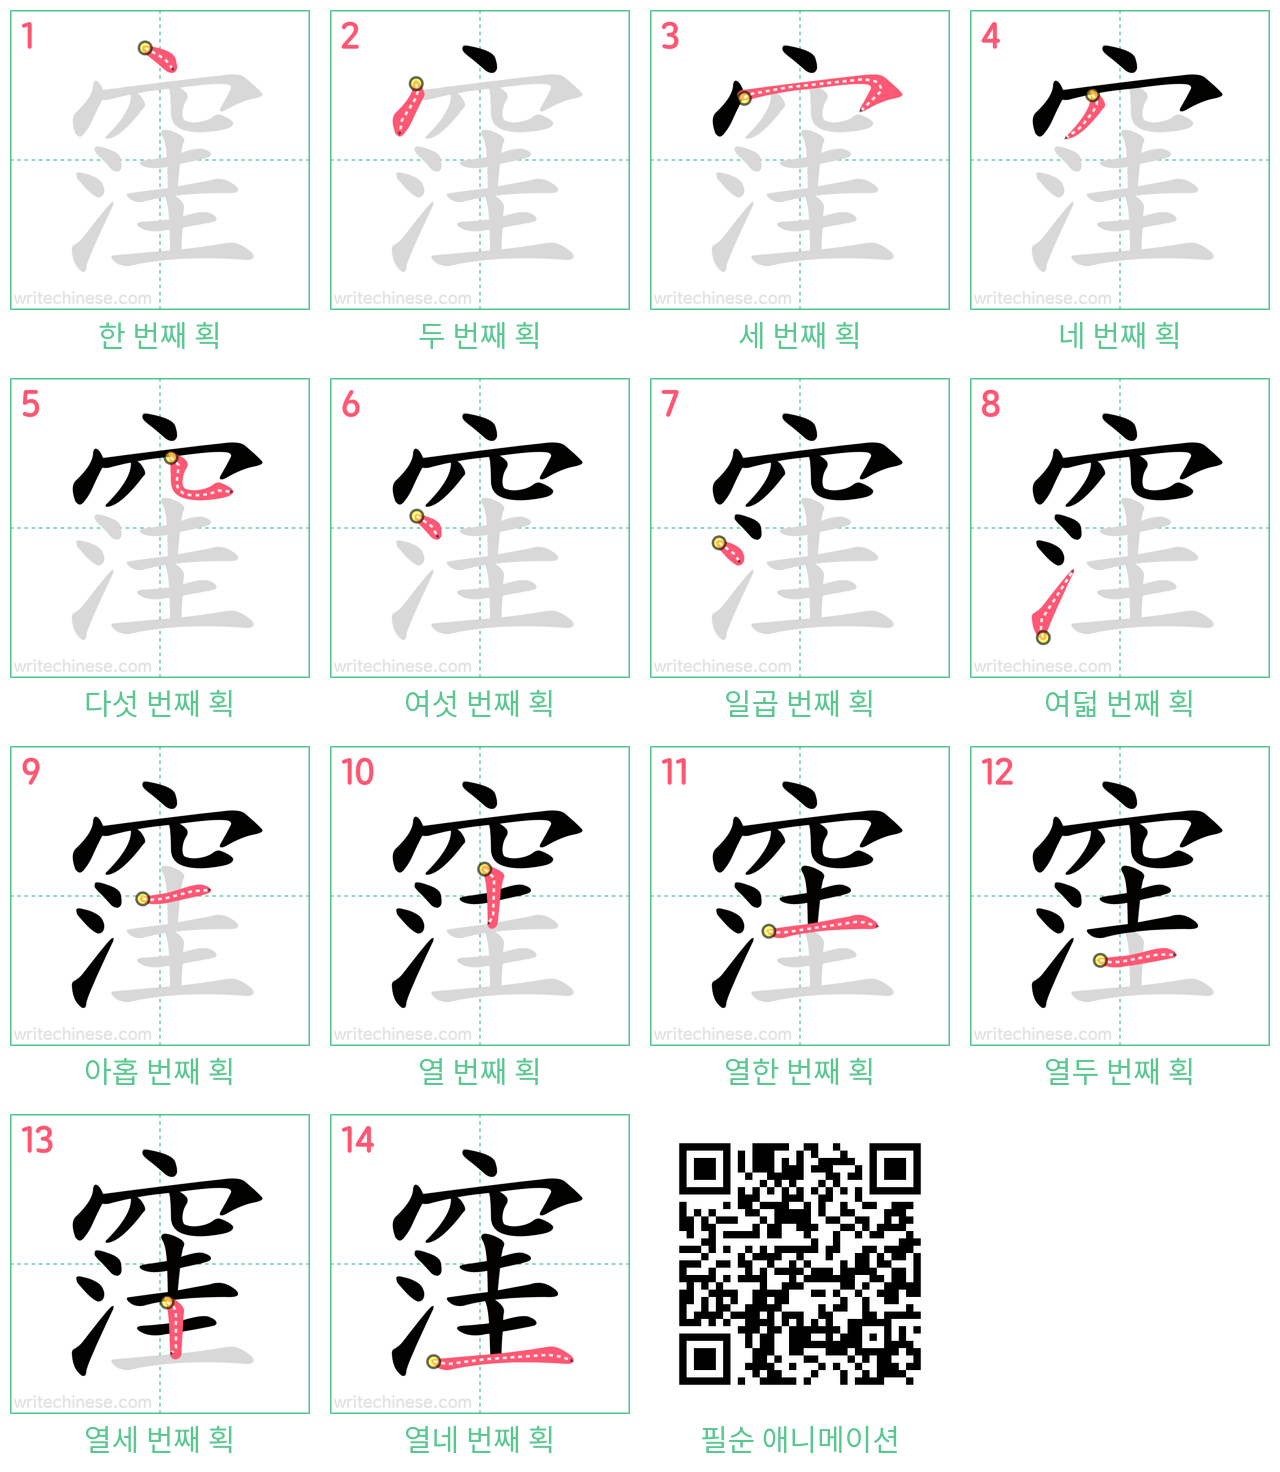 窪 step-by-step stroke order diagrams